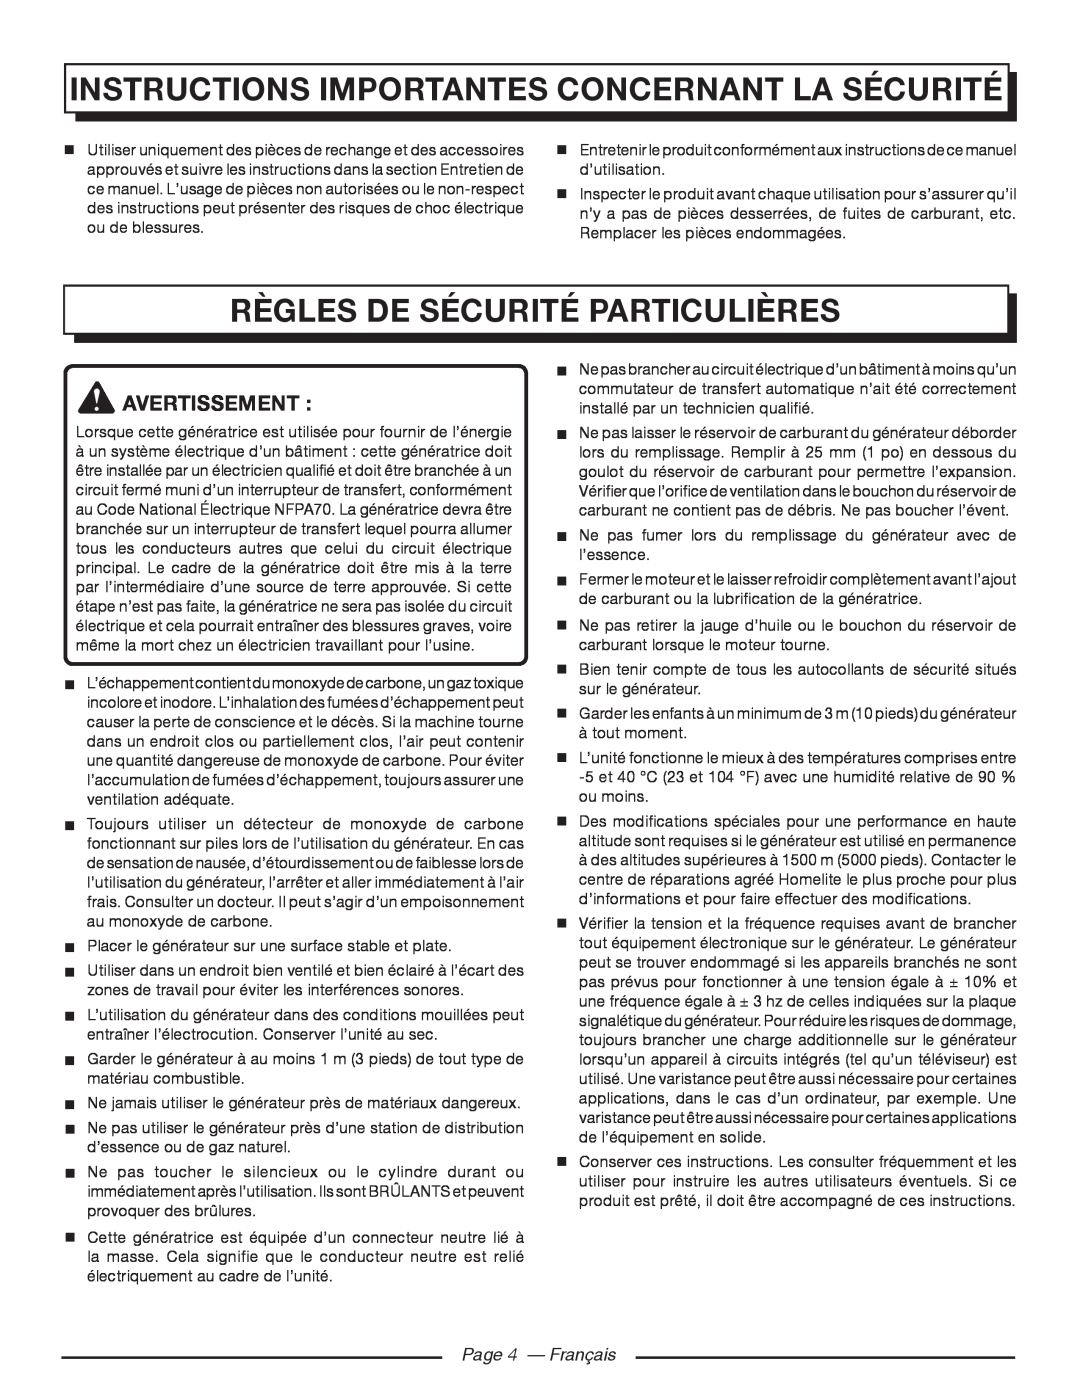 Homelite HG5000 Règles de sécurité particulières, Instructions Importantes Concernant La Sécurité, Page 4 — Français 